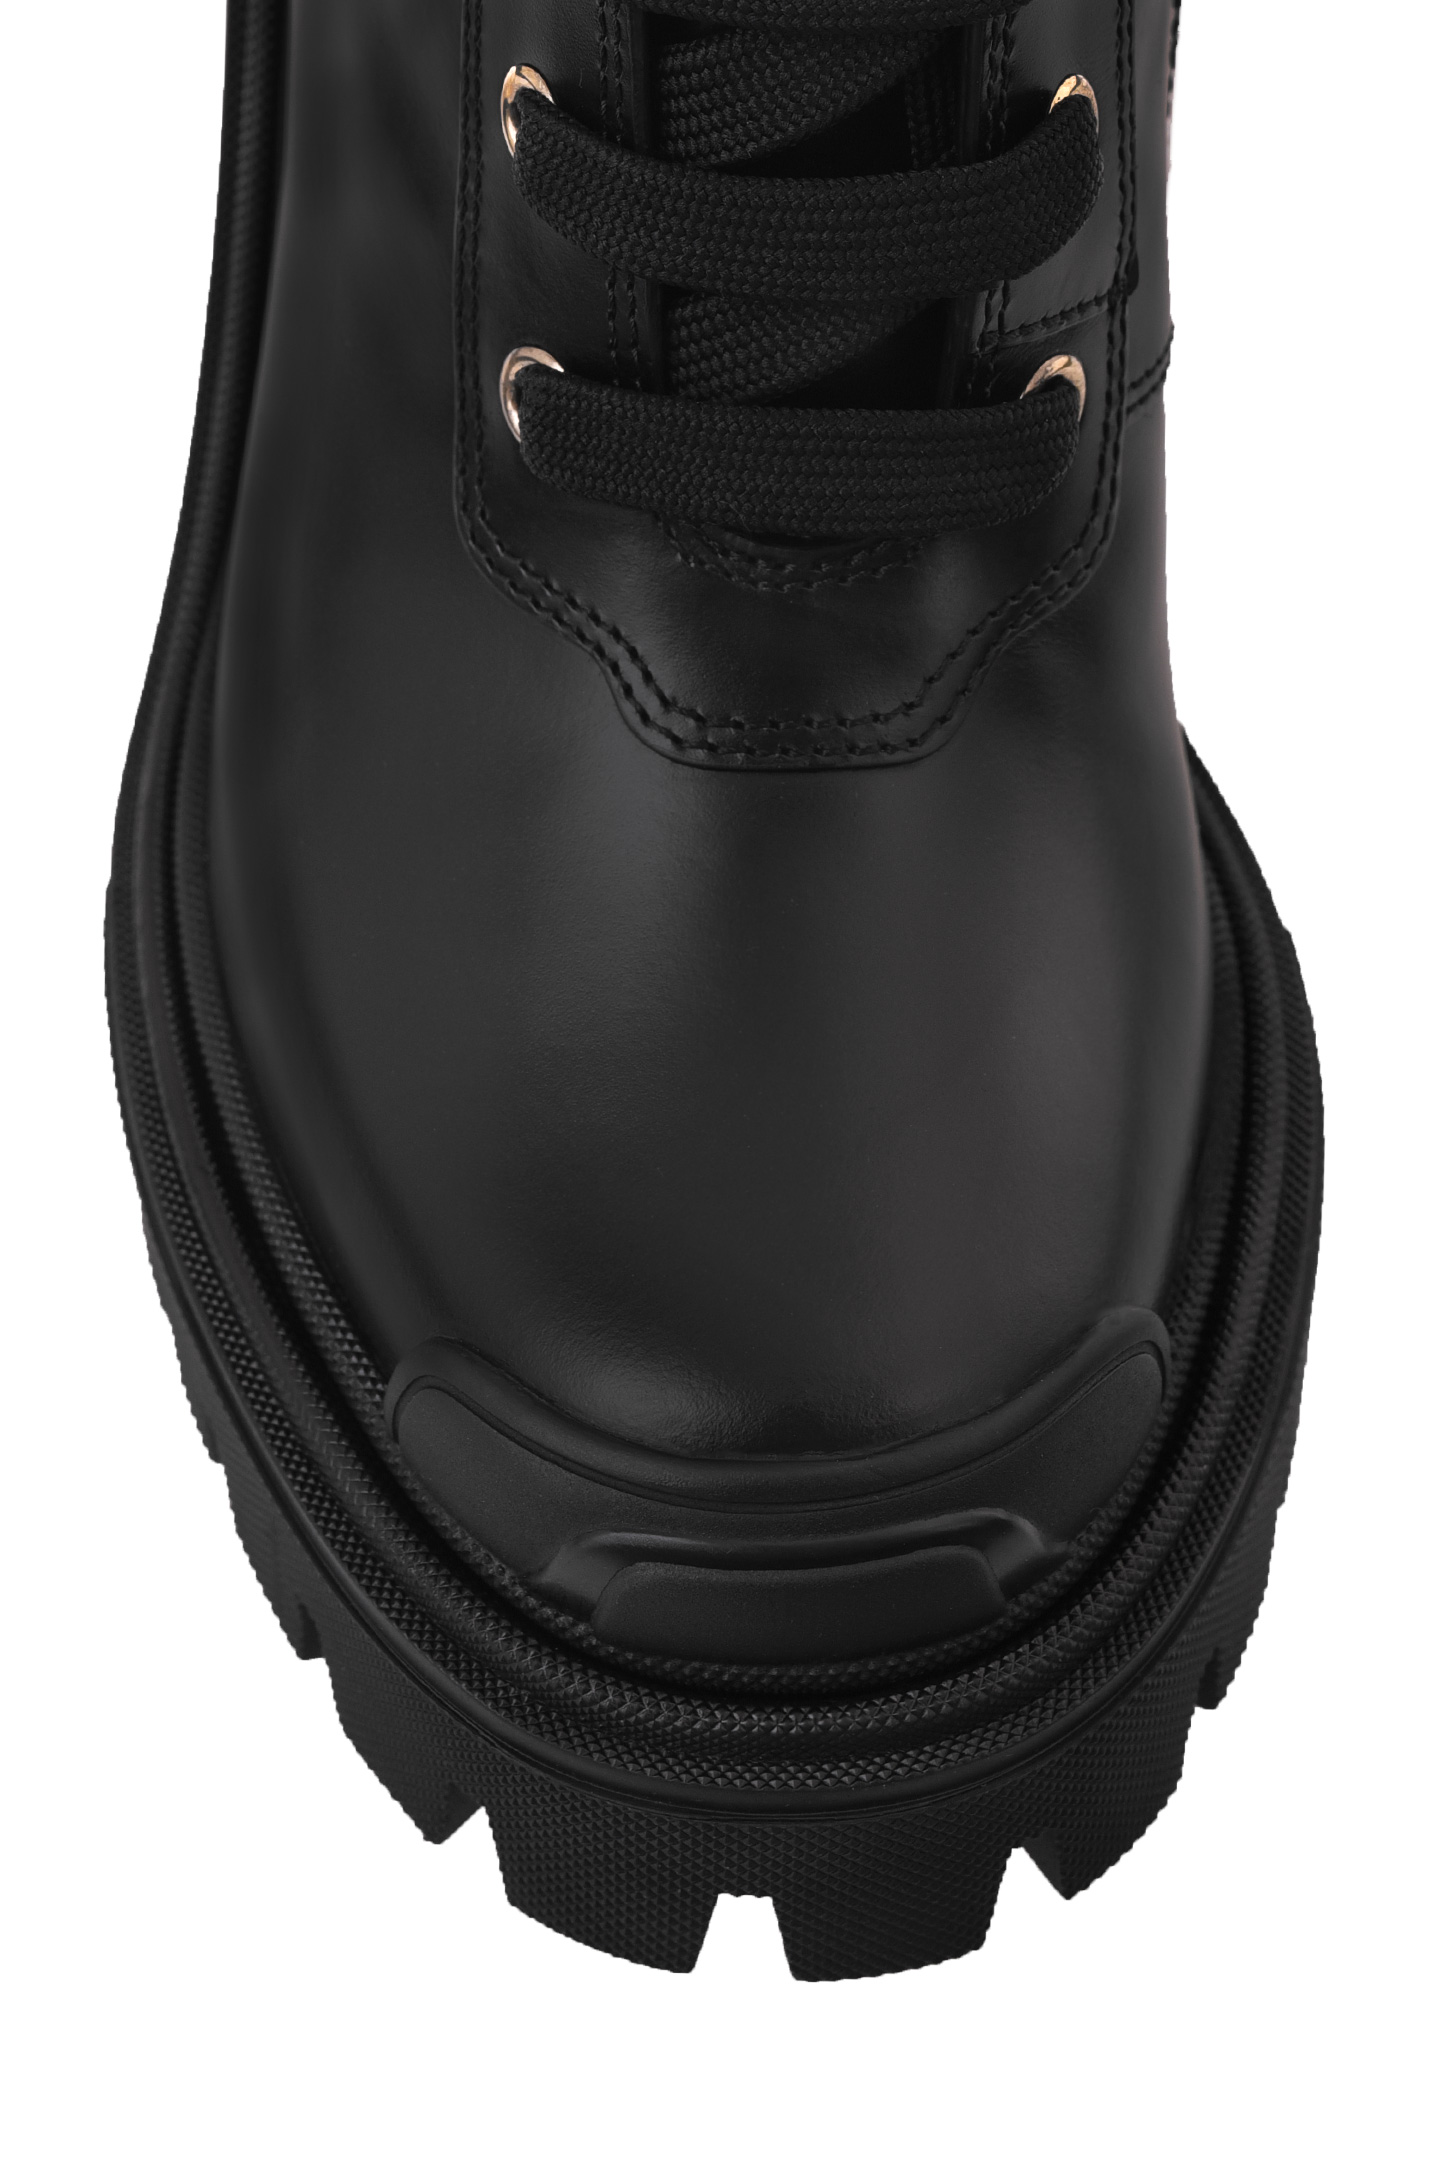 Ботинки DOLCE & GABBANA CT0781 A1203, цвет: Черный, Женский